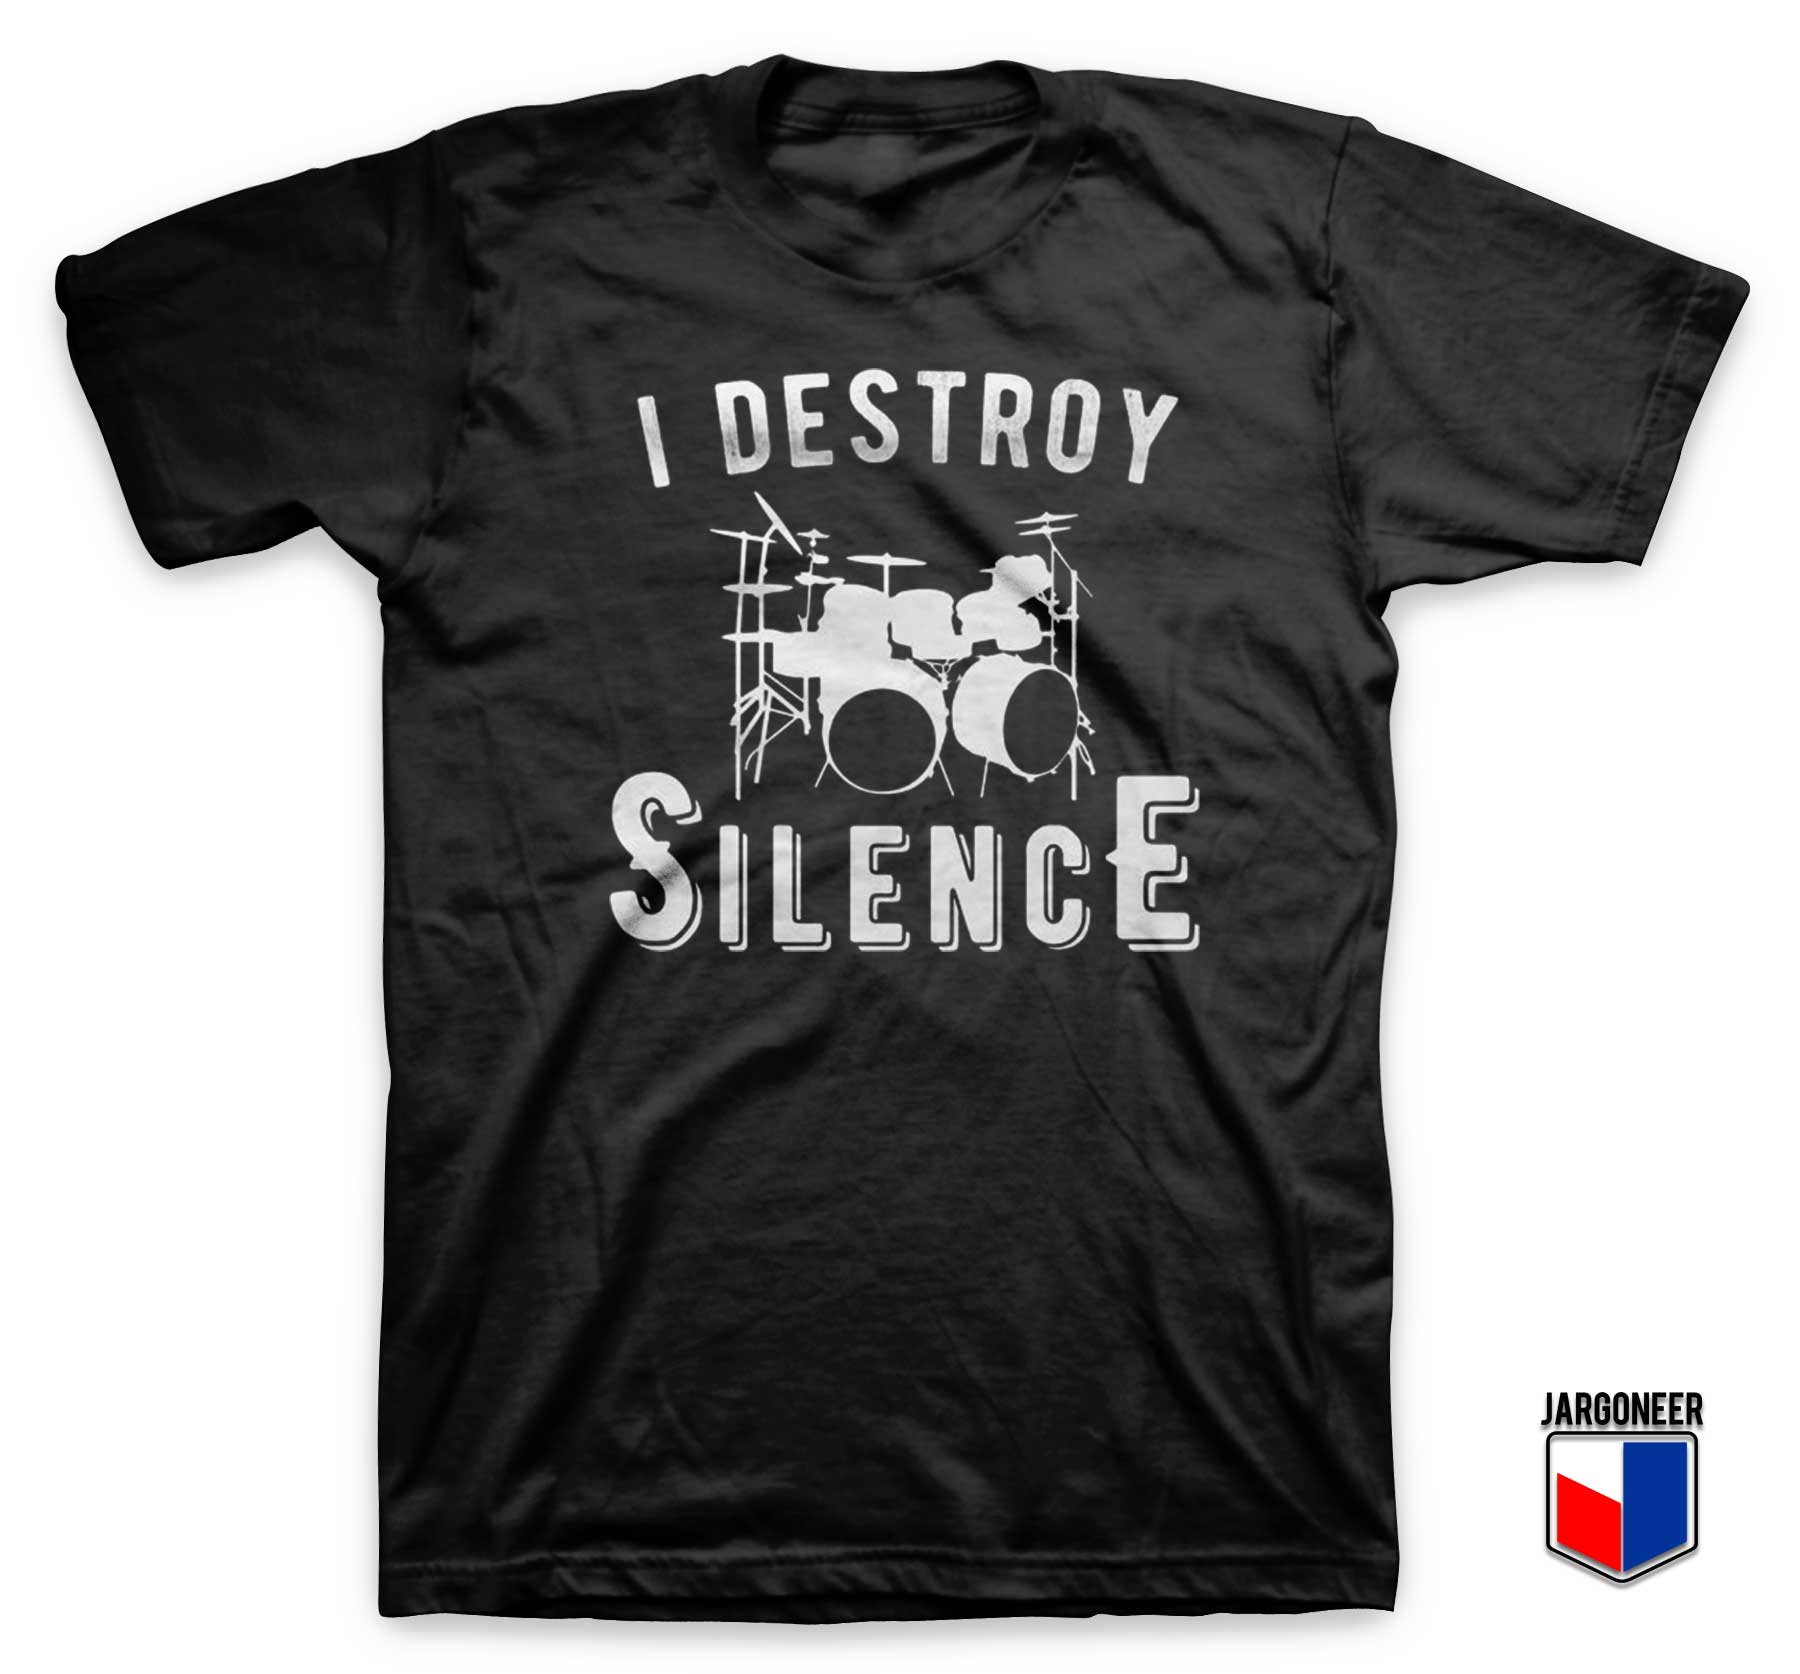 I Destroy Silence T Shirt - Shop Unique Graphic Cool Shirt Designs